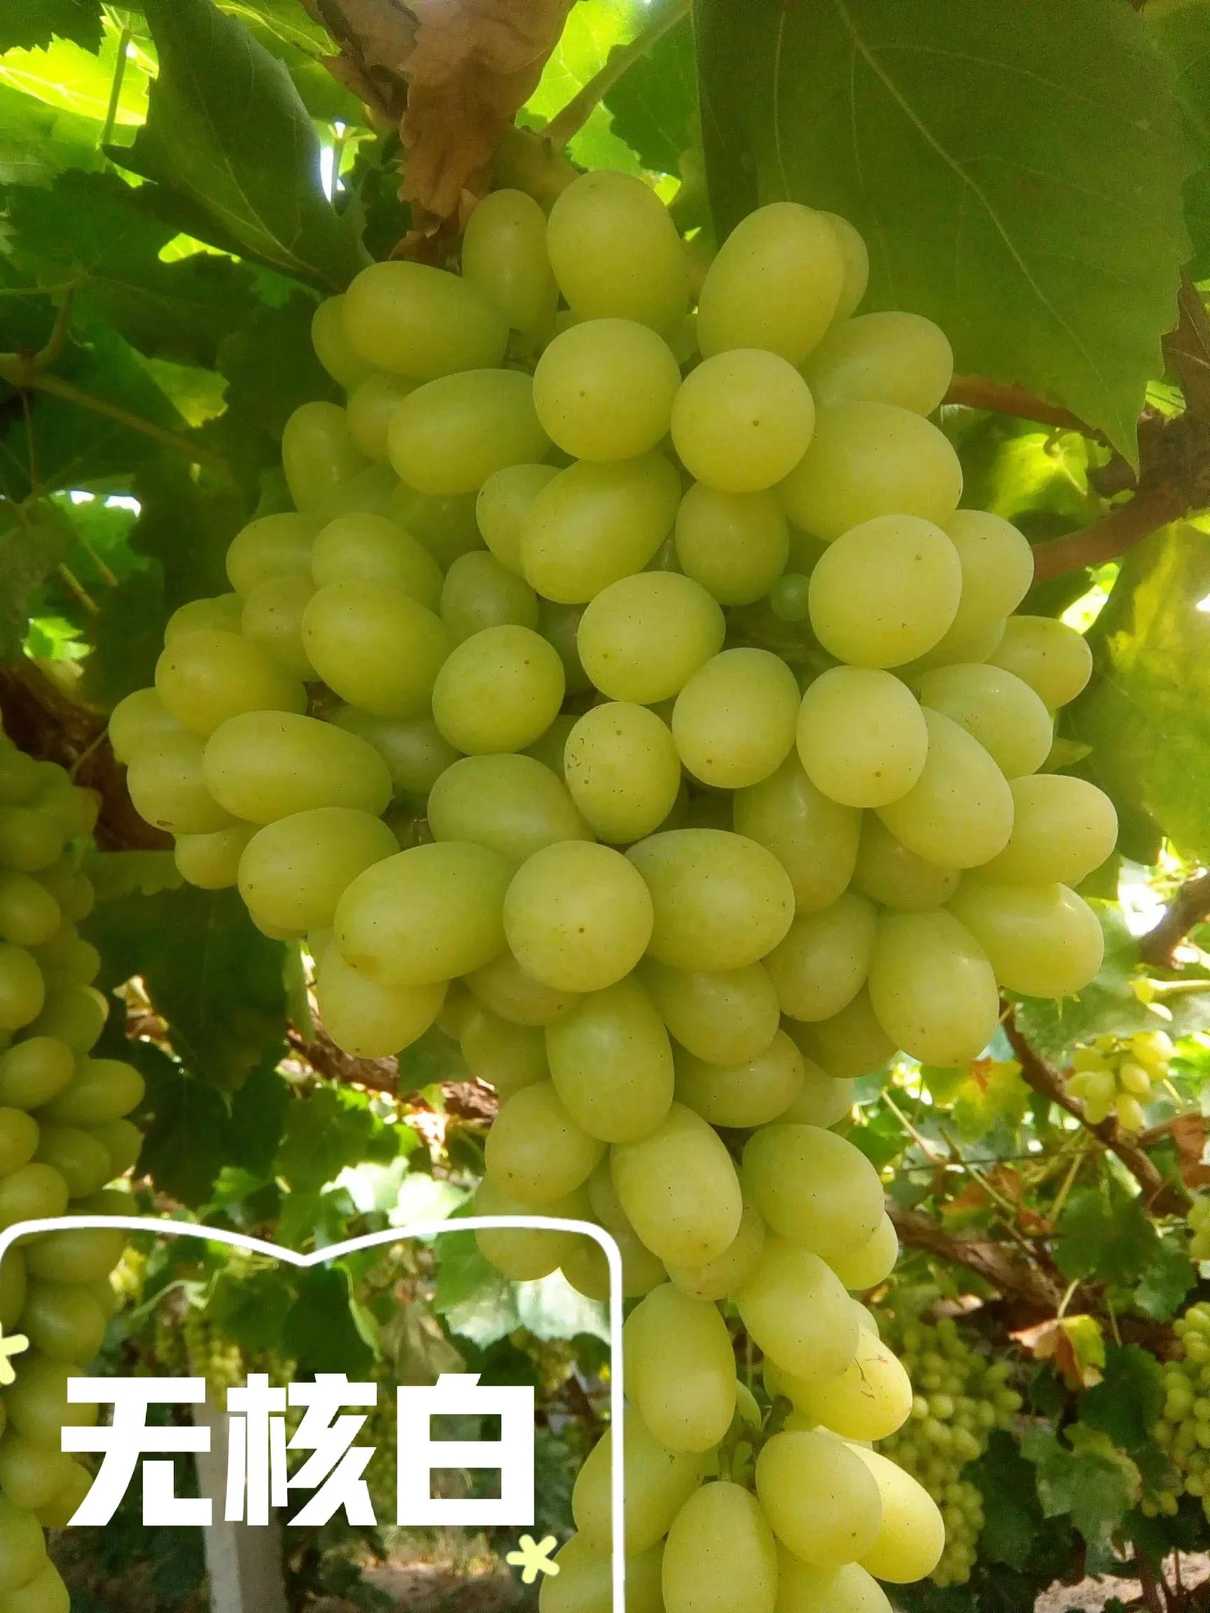 新疆的葡萄都是什么品种